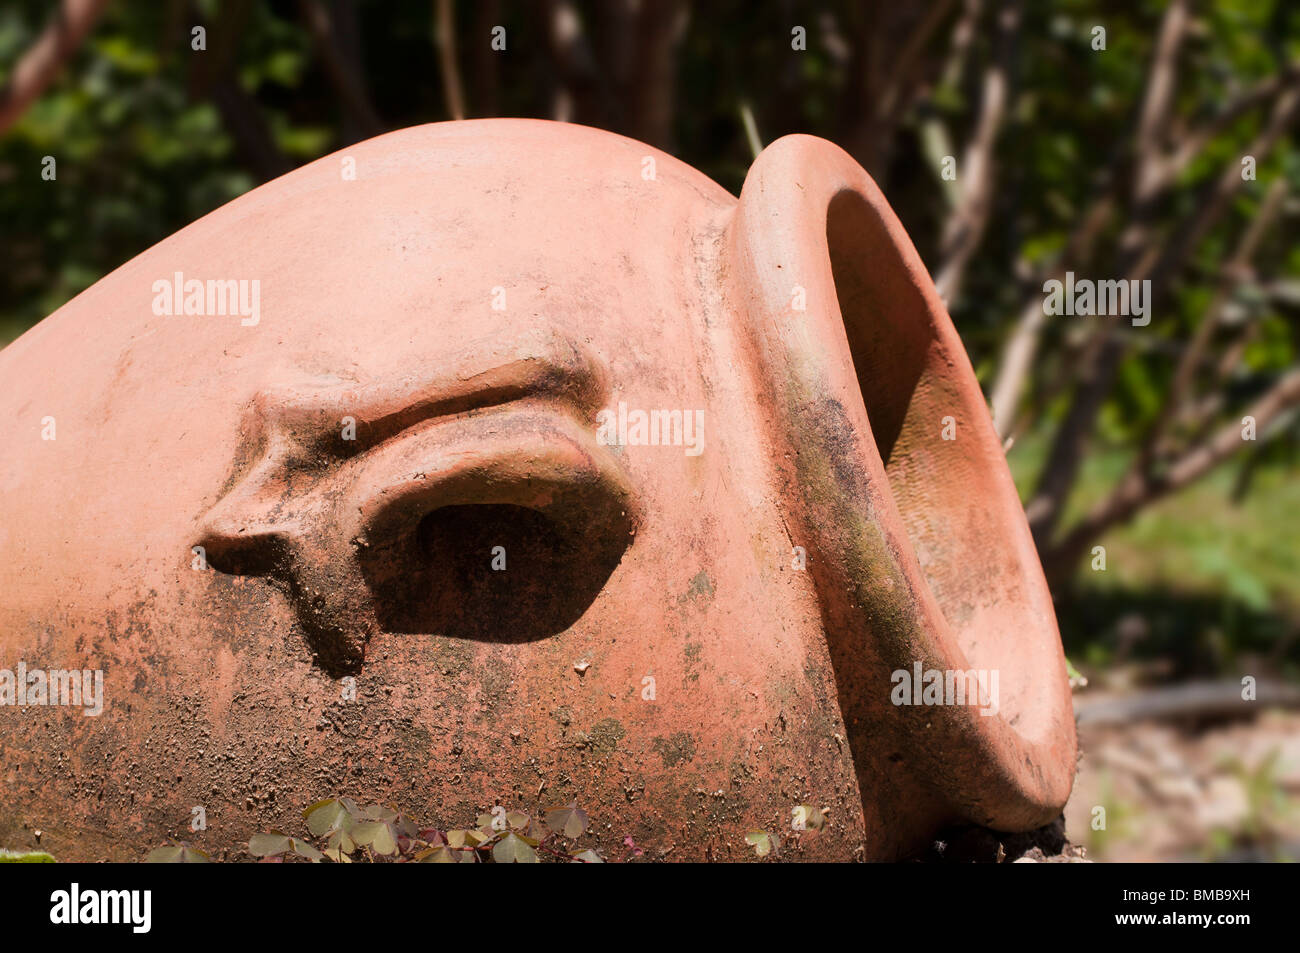 Detaillierten Keramik Amphore liegen in einem Garten Stockfoto